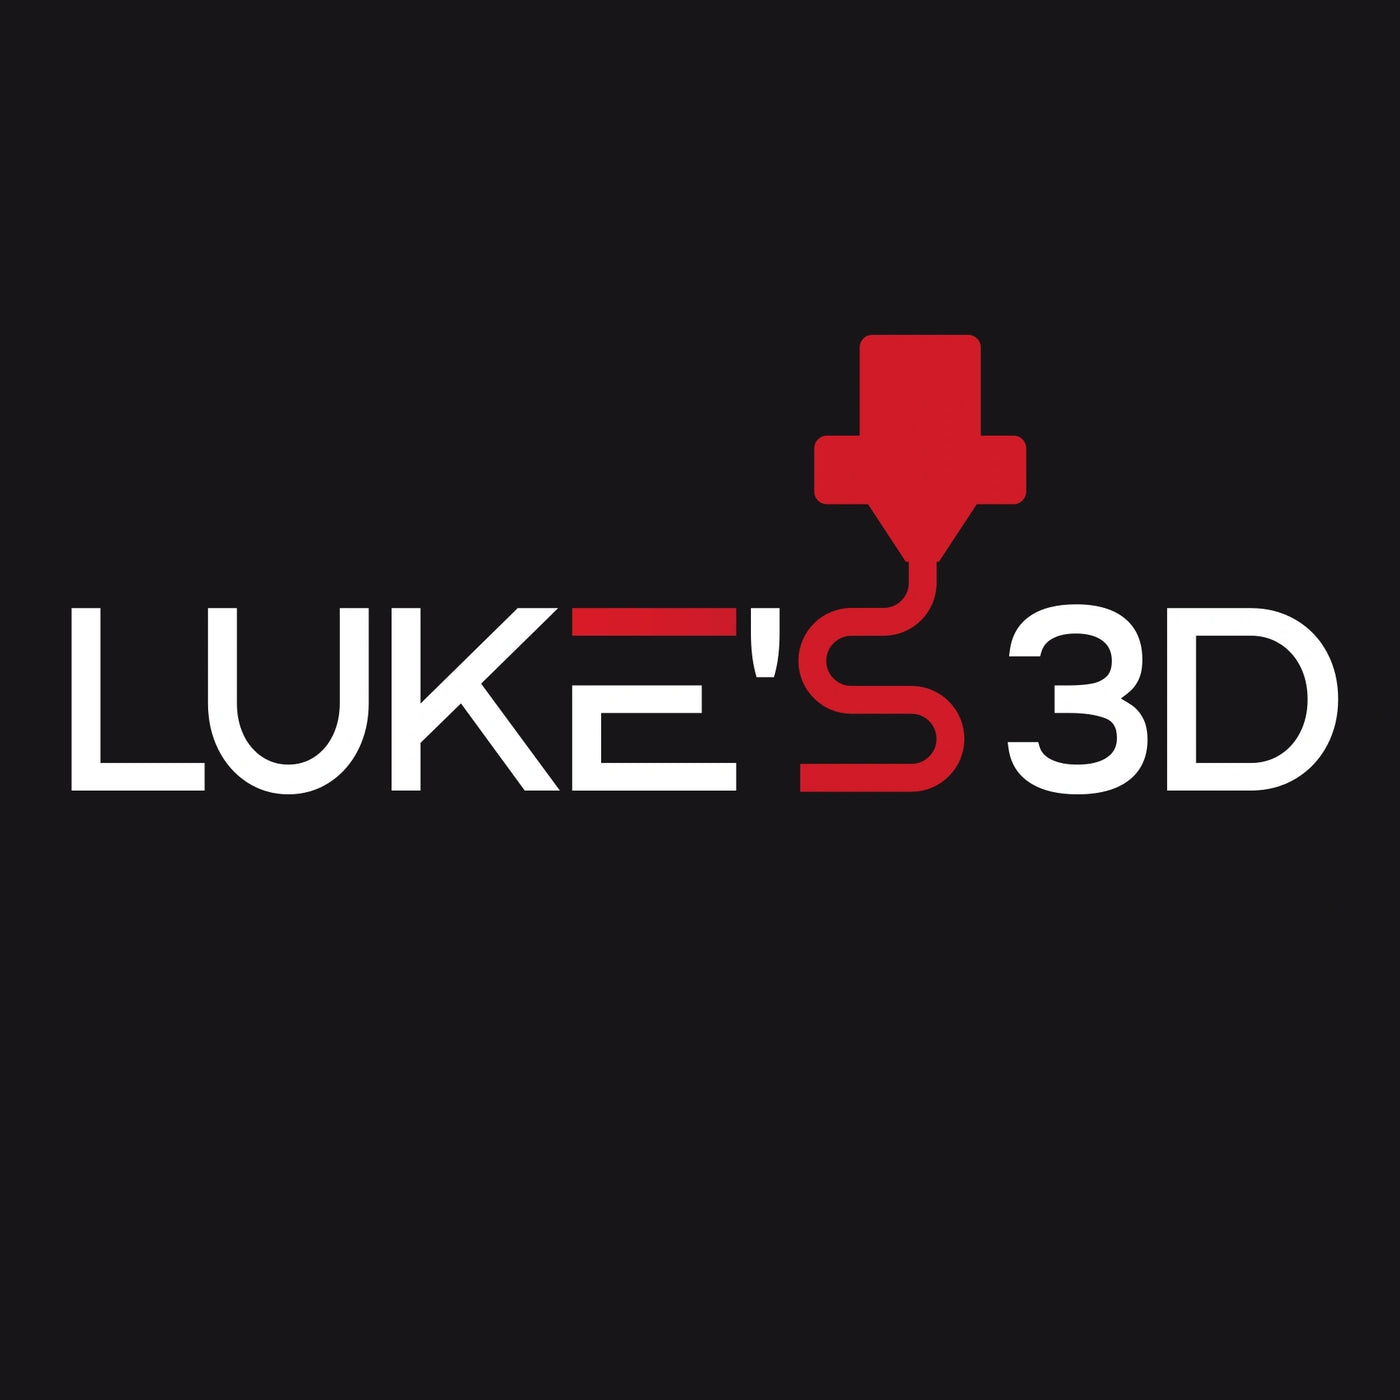 Luke's 3D